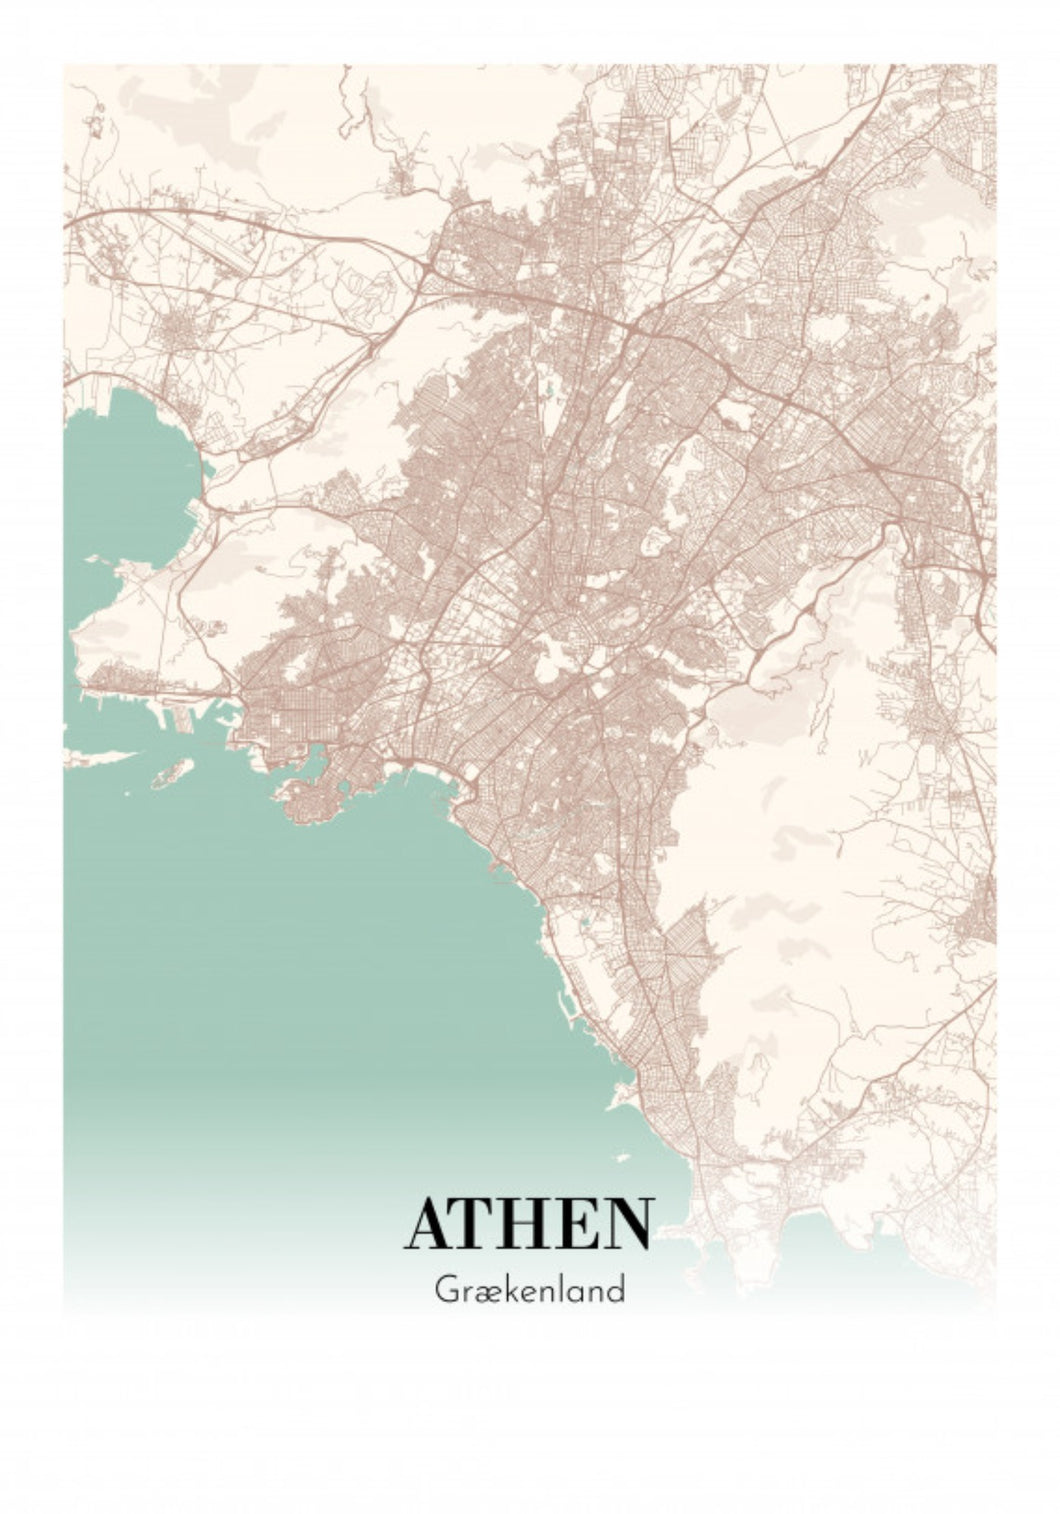 Athen - Grækenland